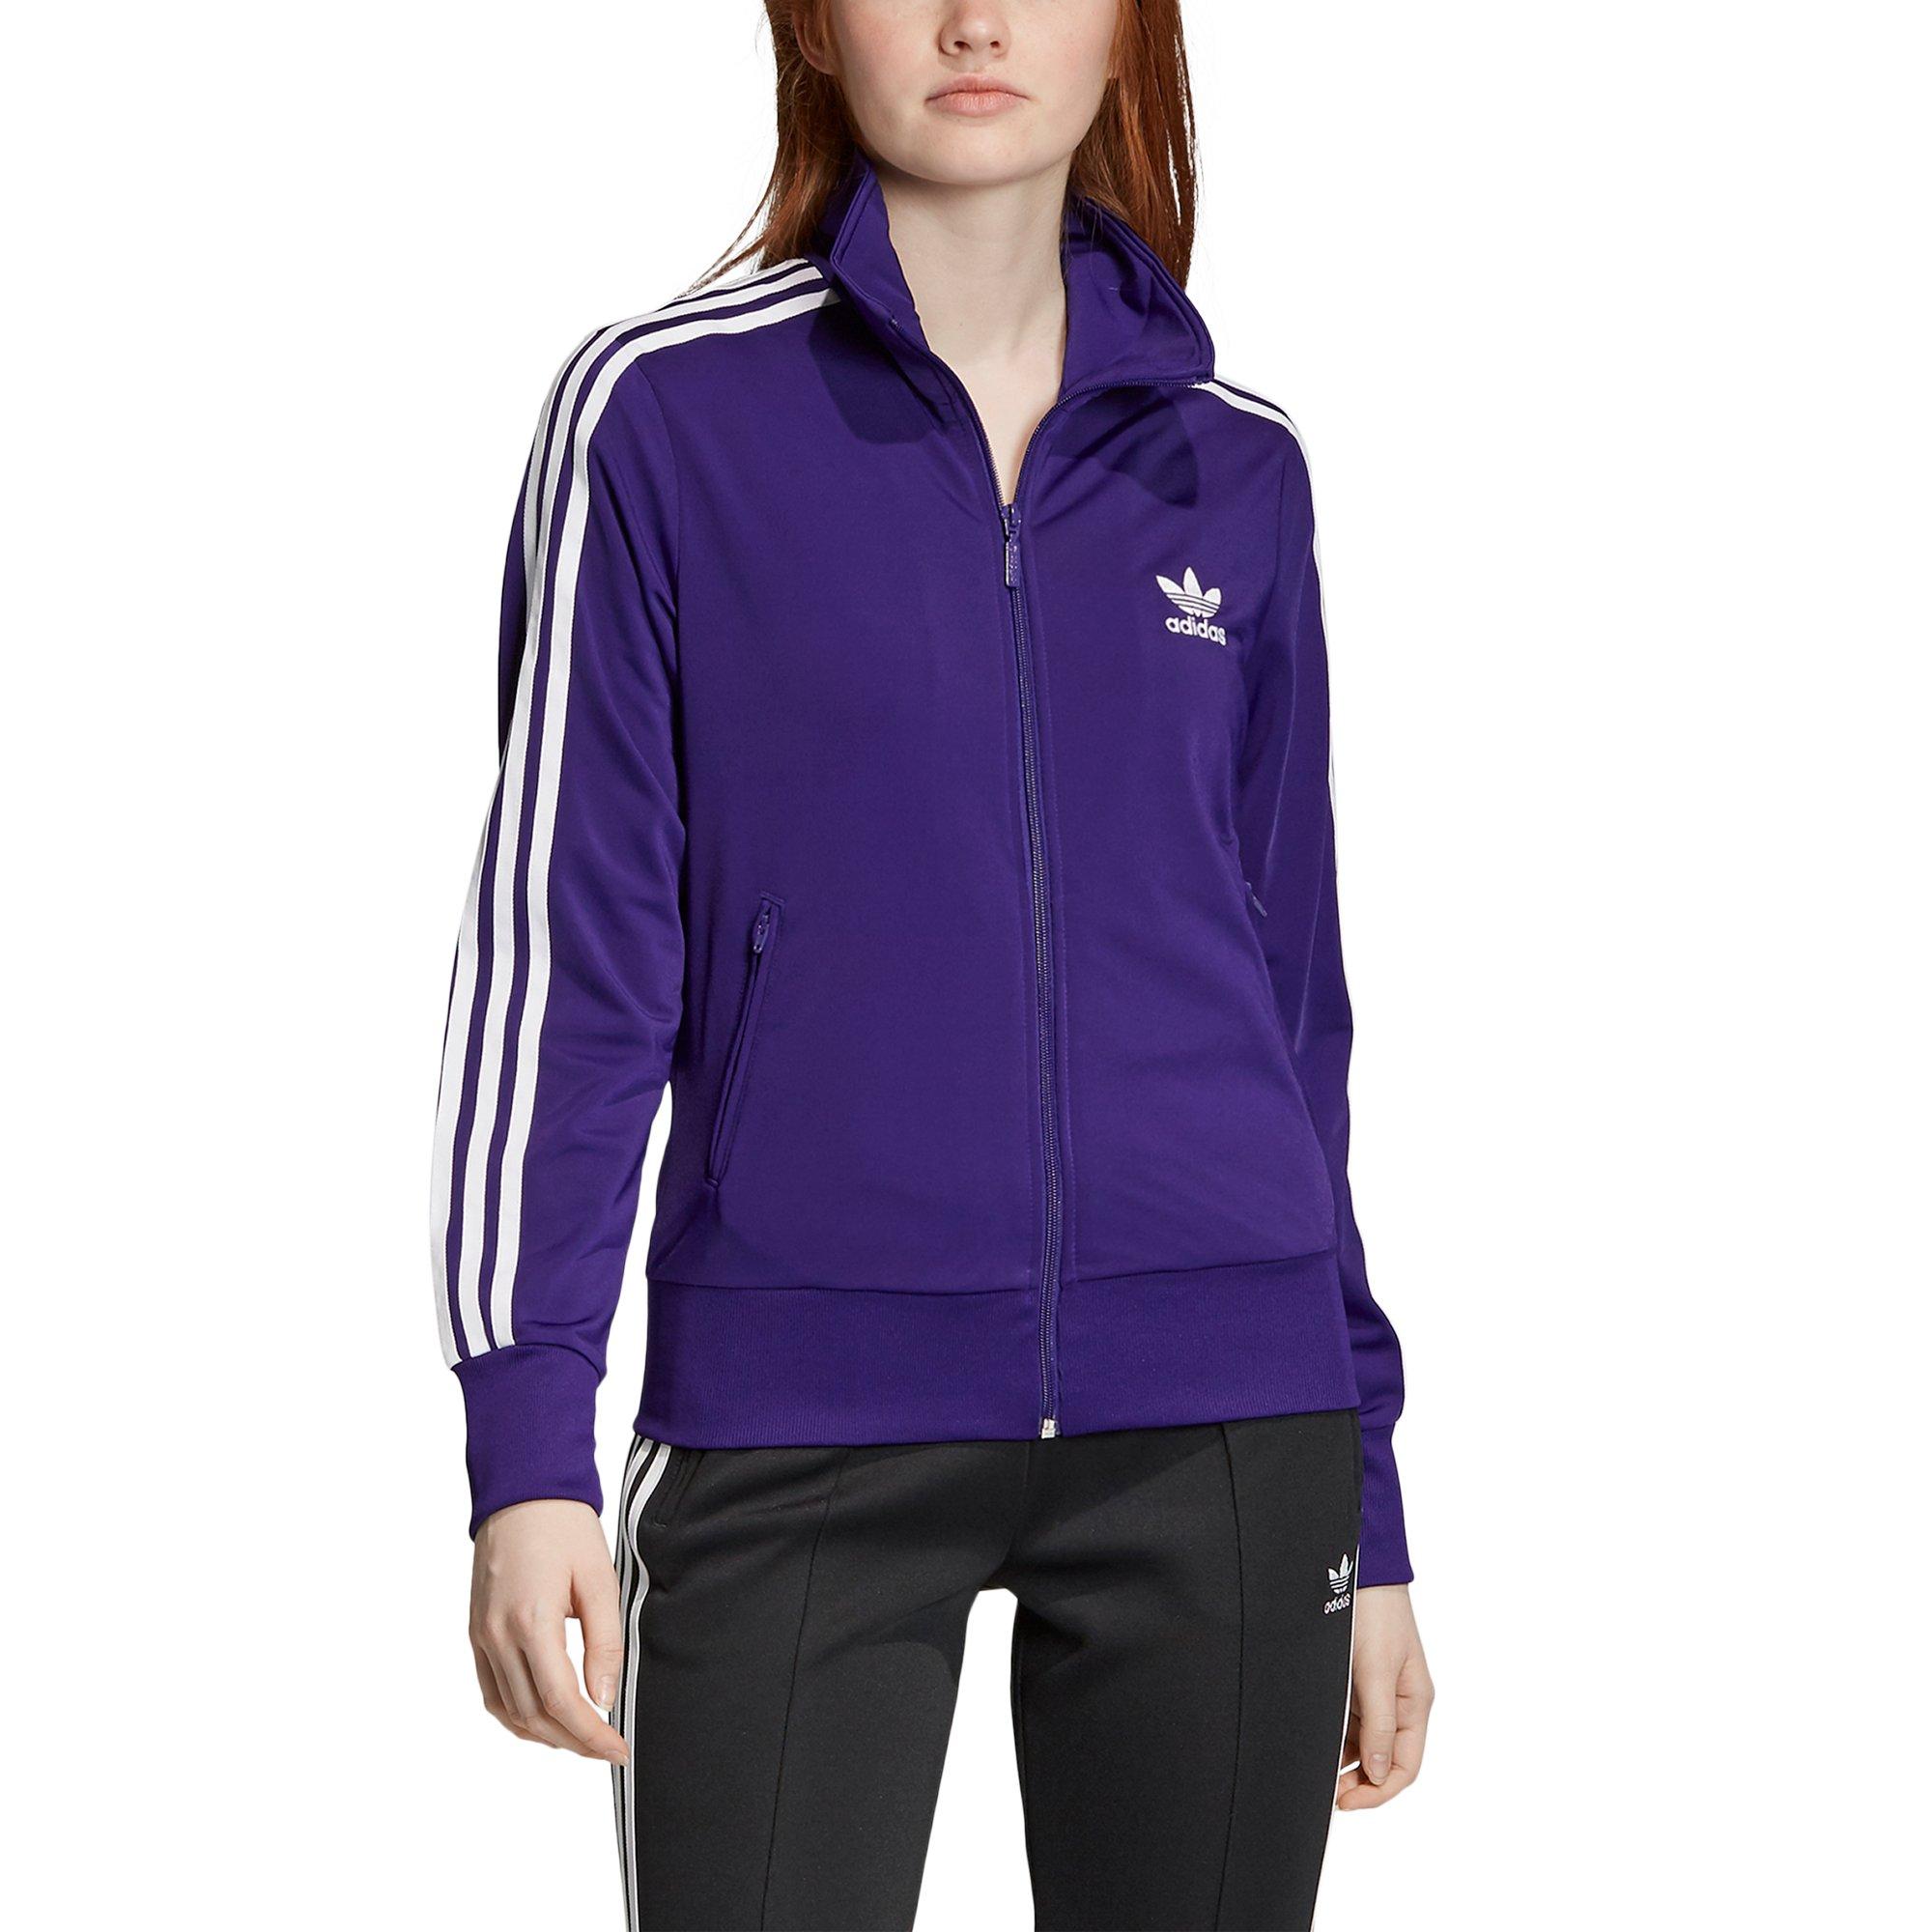 womens purple adidas track jacket